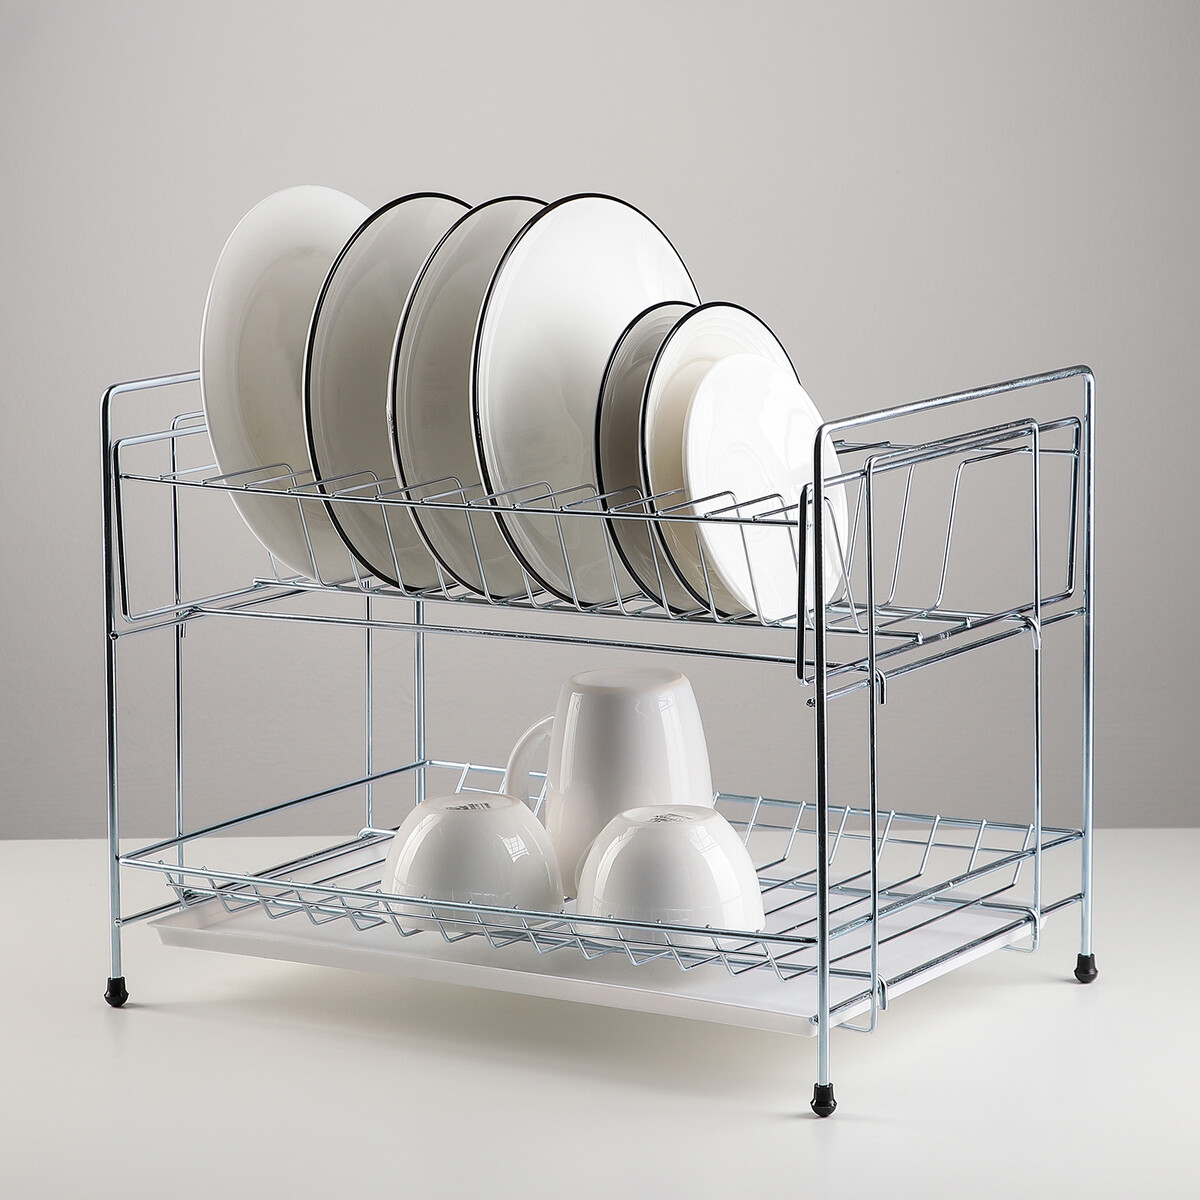 Сушилка для посуды с поддоном 2-х ярусная, разборная, 39×25,5×30 см, цинк, цвет серебристый сушилка для посуды с поддоном 24×39×15 см хром